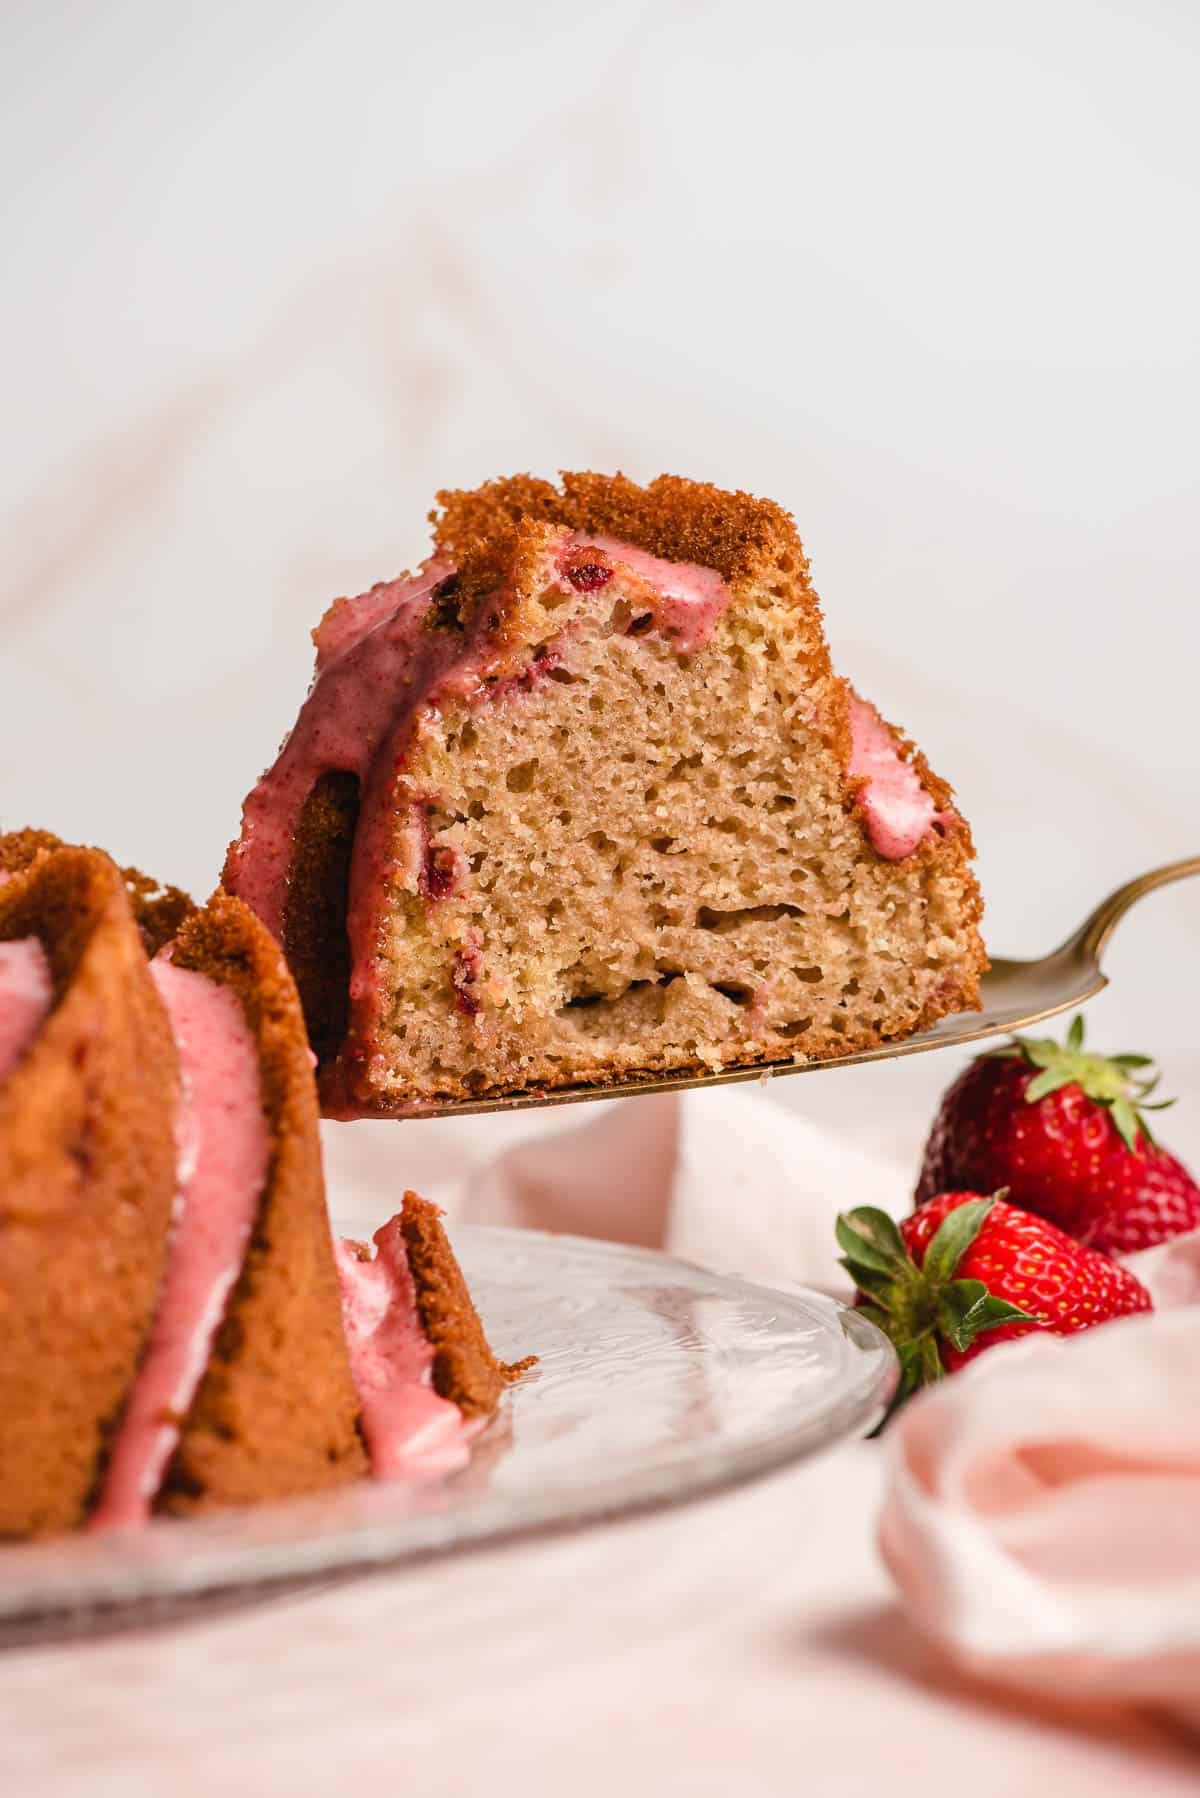 Strawberry Bundt Cake with Strawberry Glaze